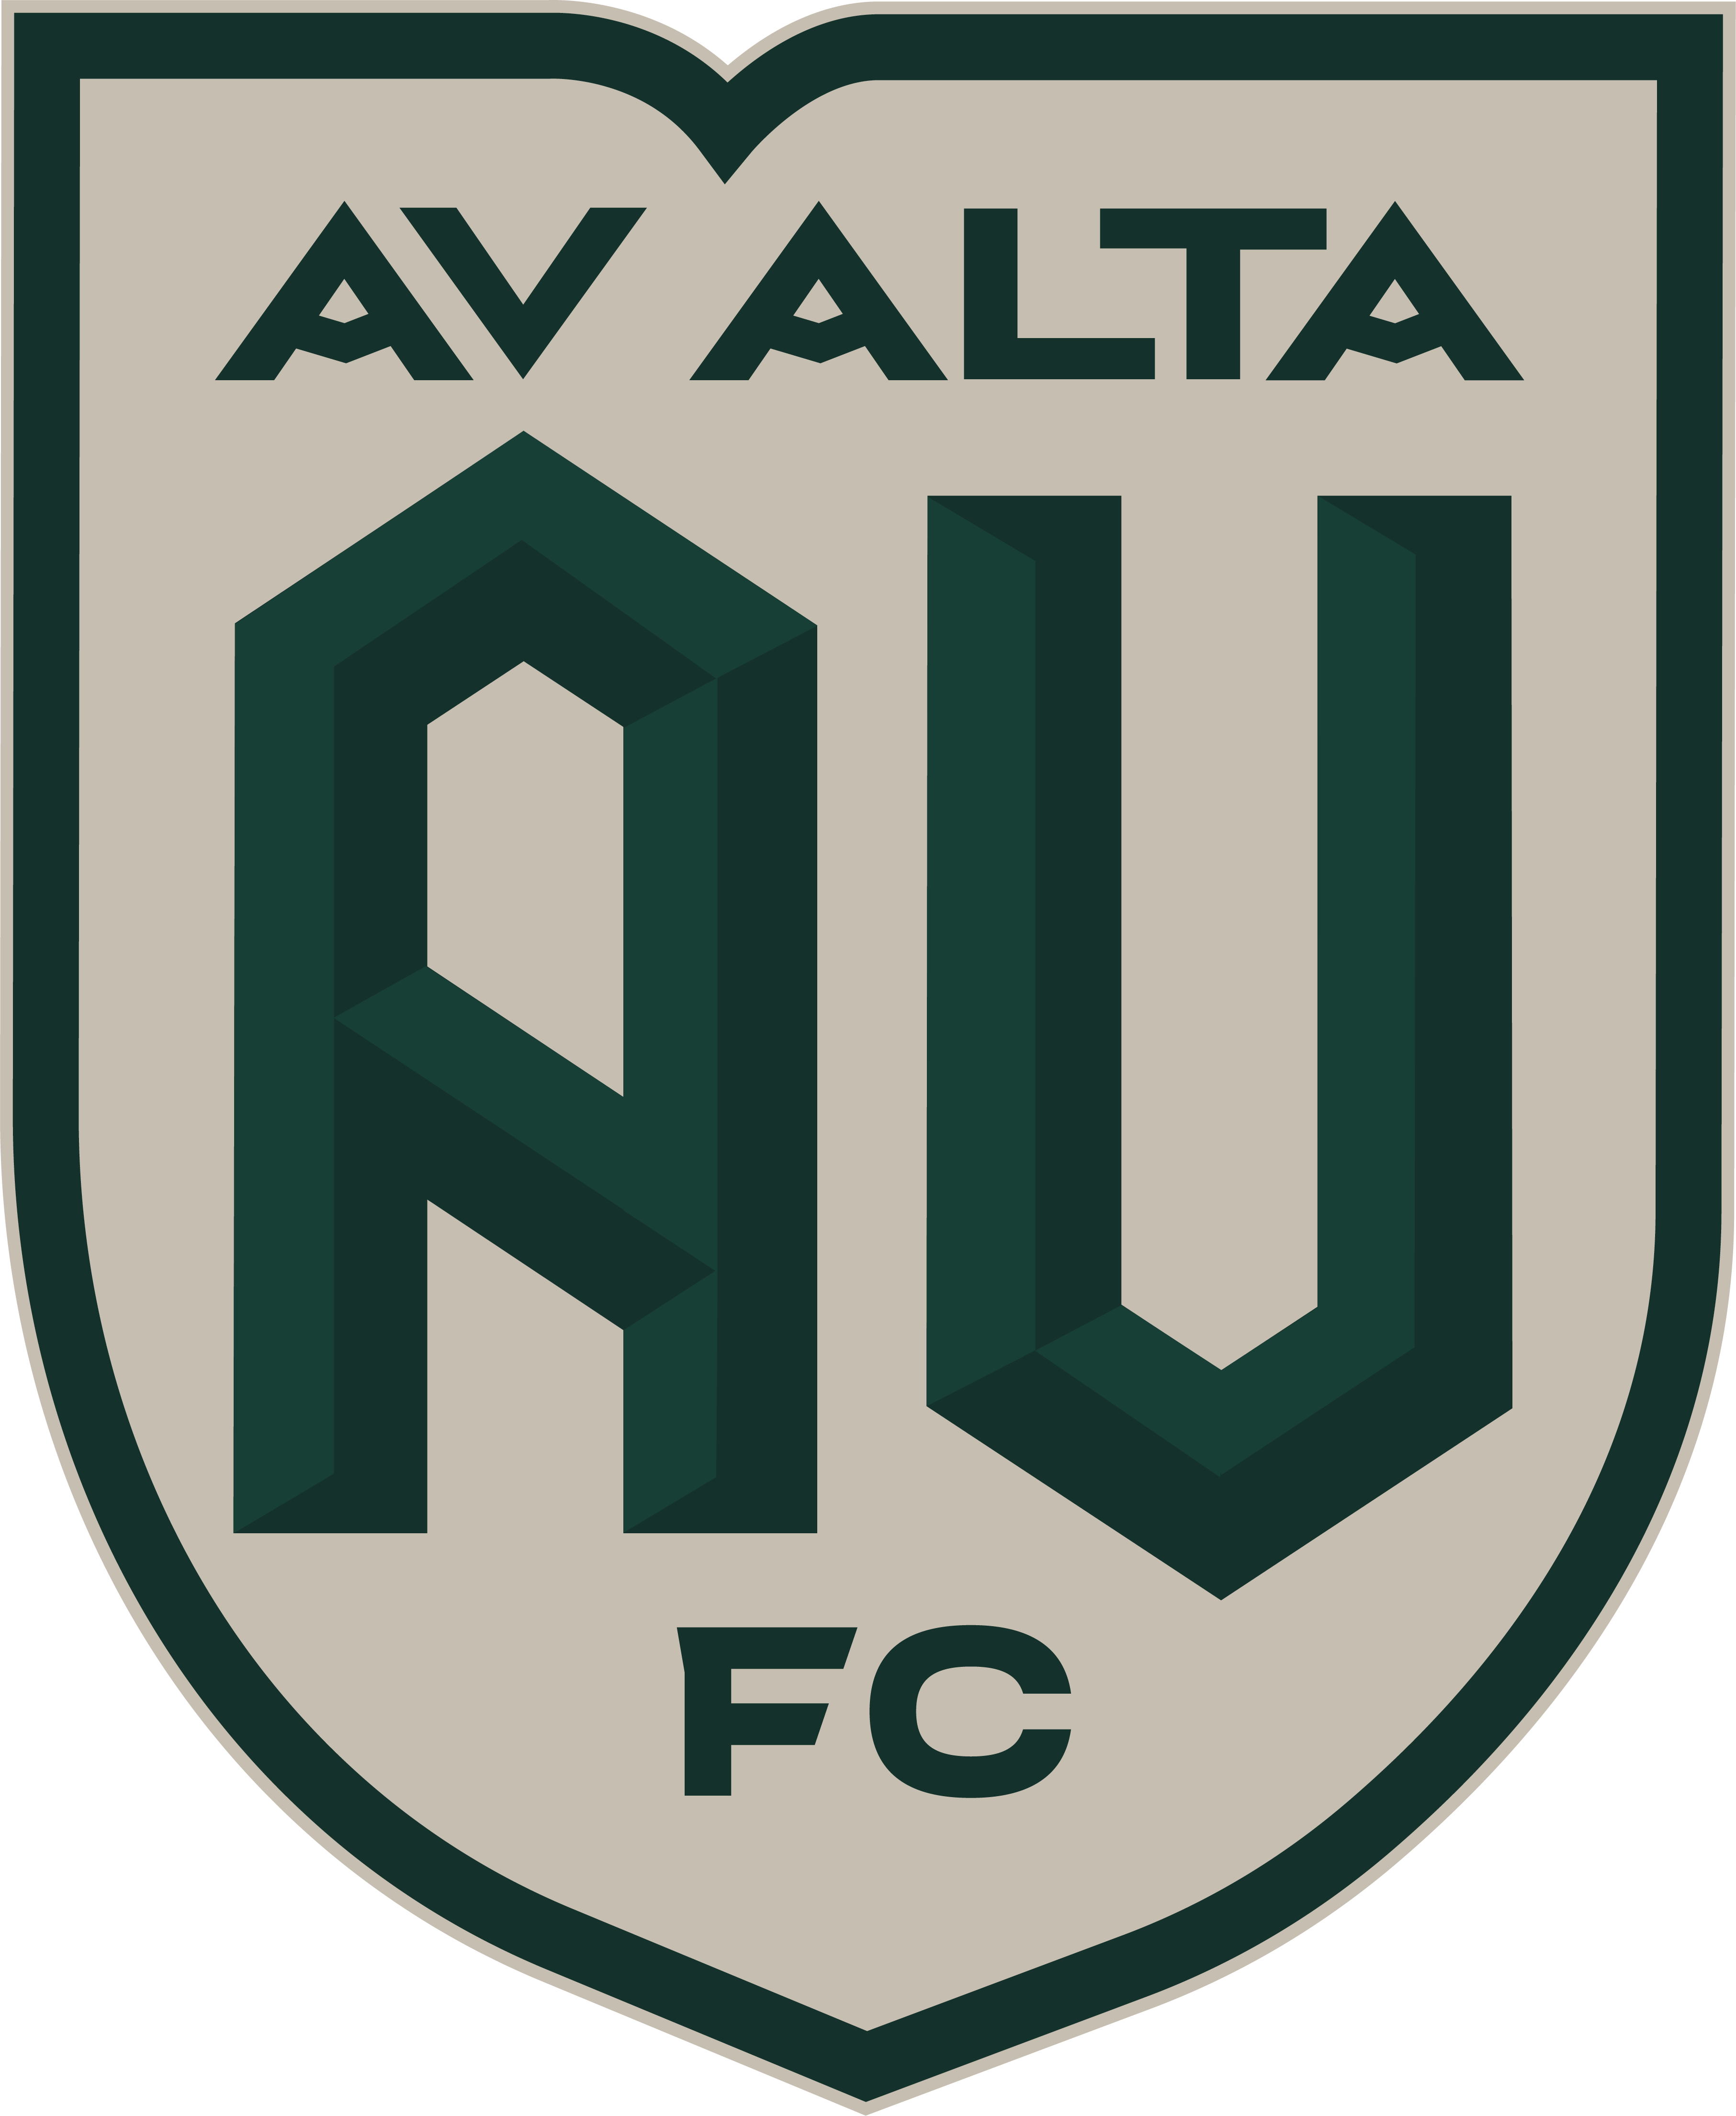 AV Alta FC